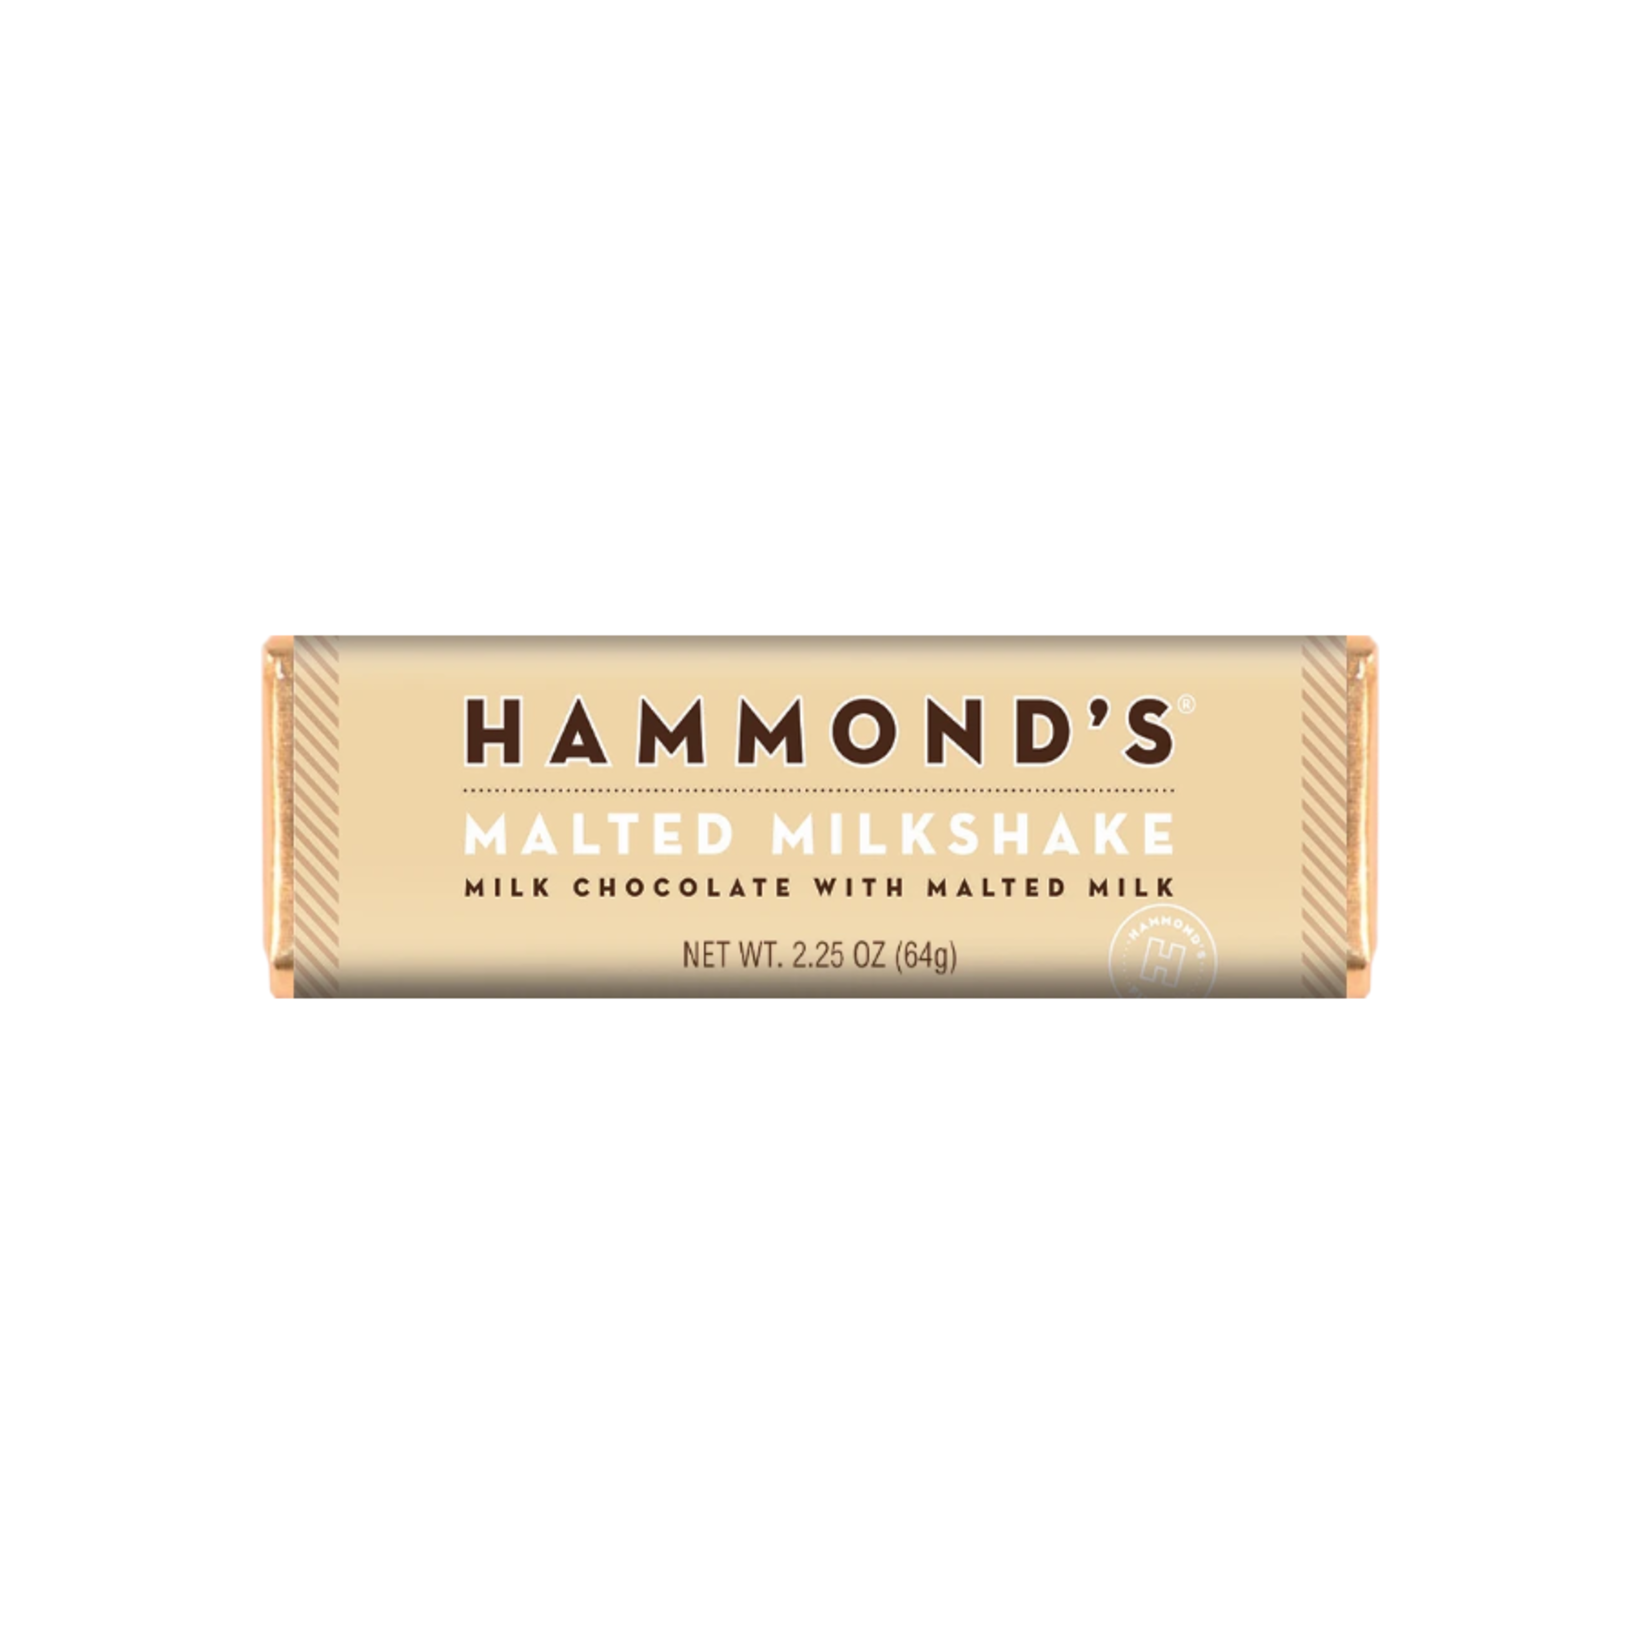 Hammond's Malted Milk Shake Chocolate Bar